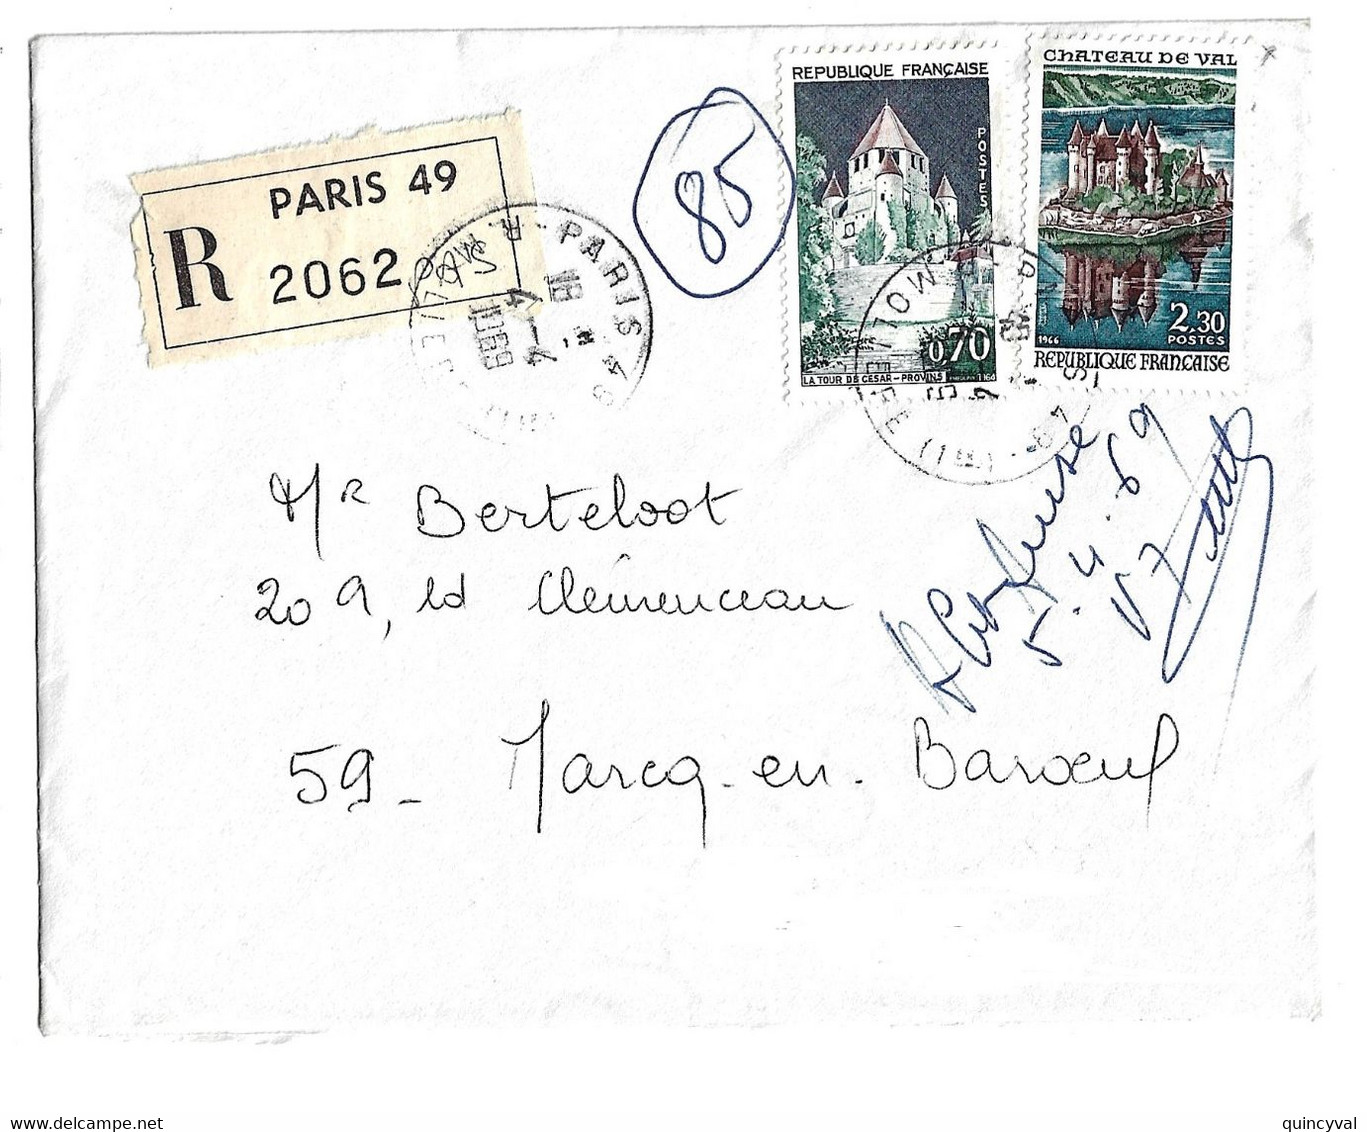 PARIS 48 Lettre Recommandée 70c Provins 2,30 F Château De Val Yv 1426 1540 Ob 4 4 1969 Etiquette Reco - Covers & Documents